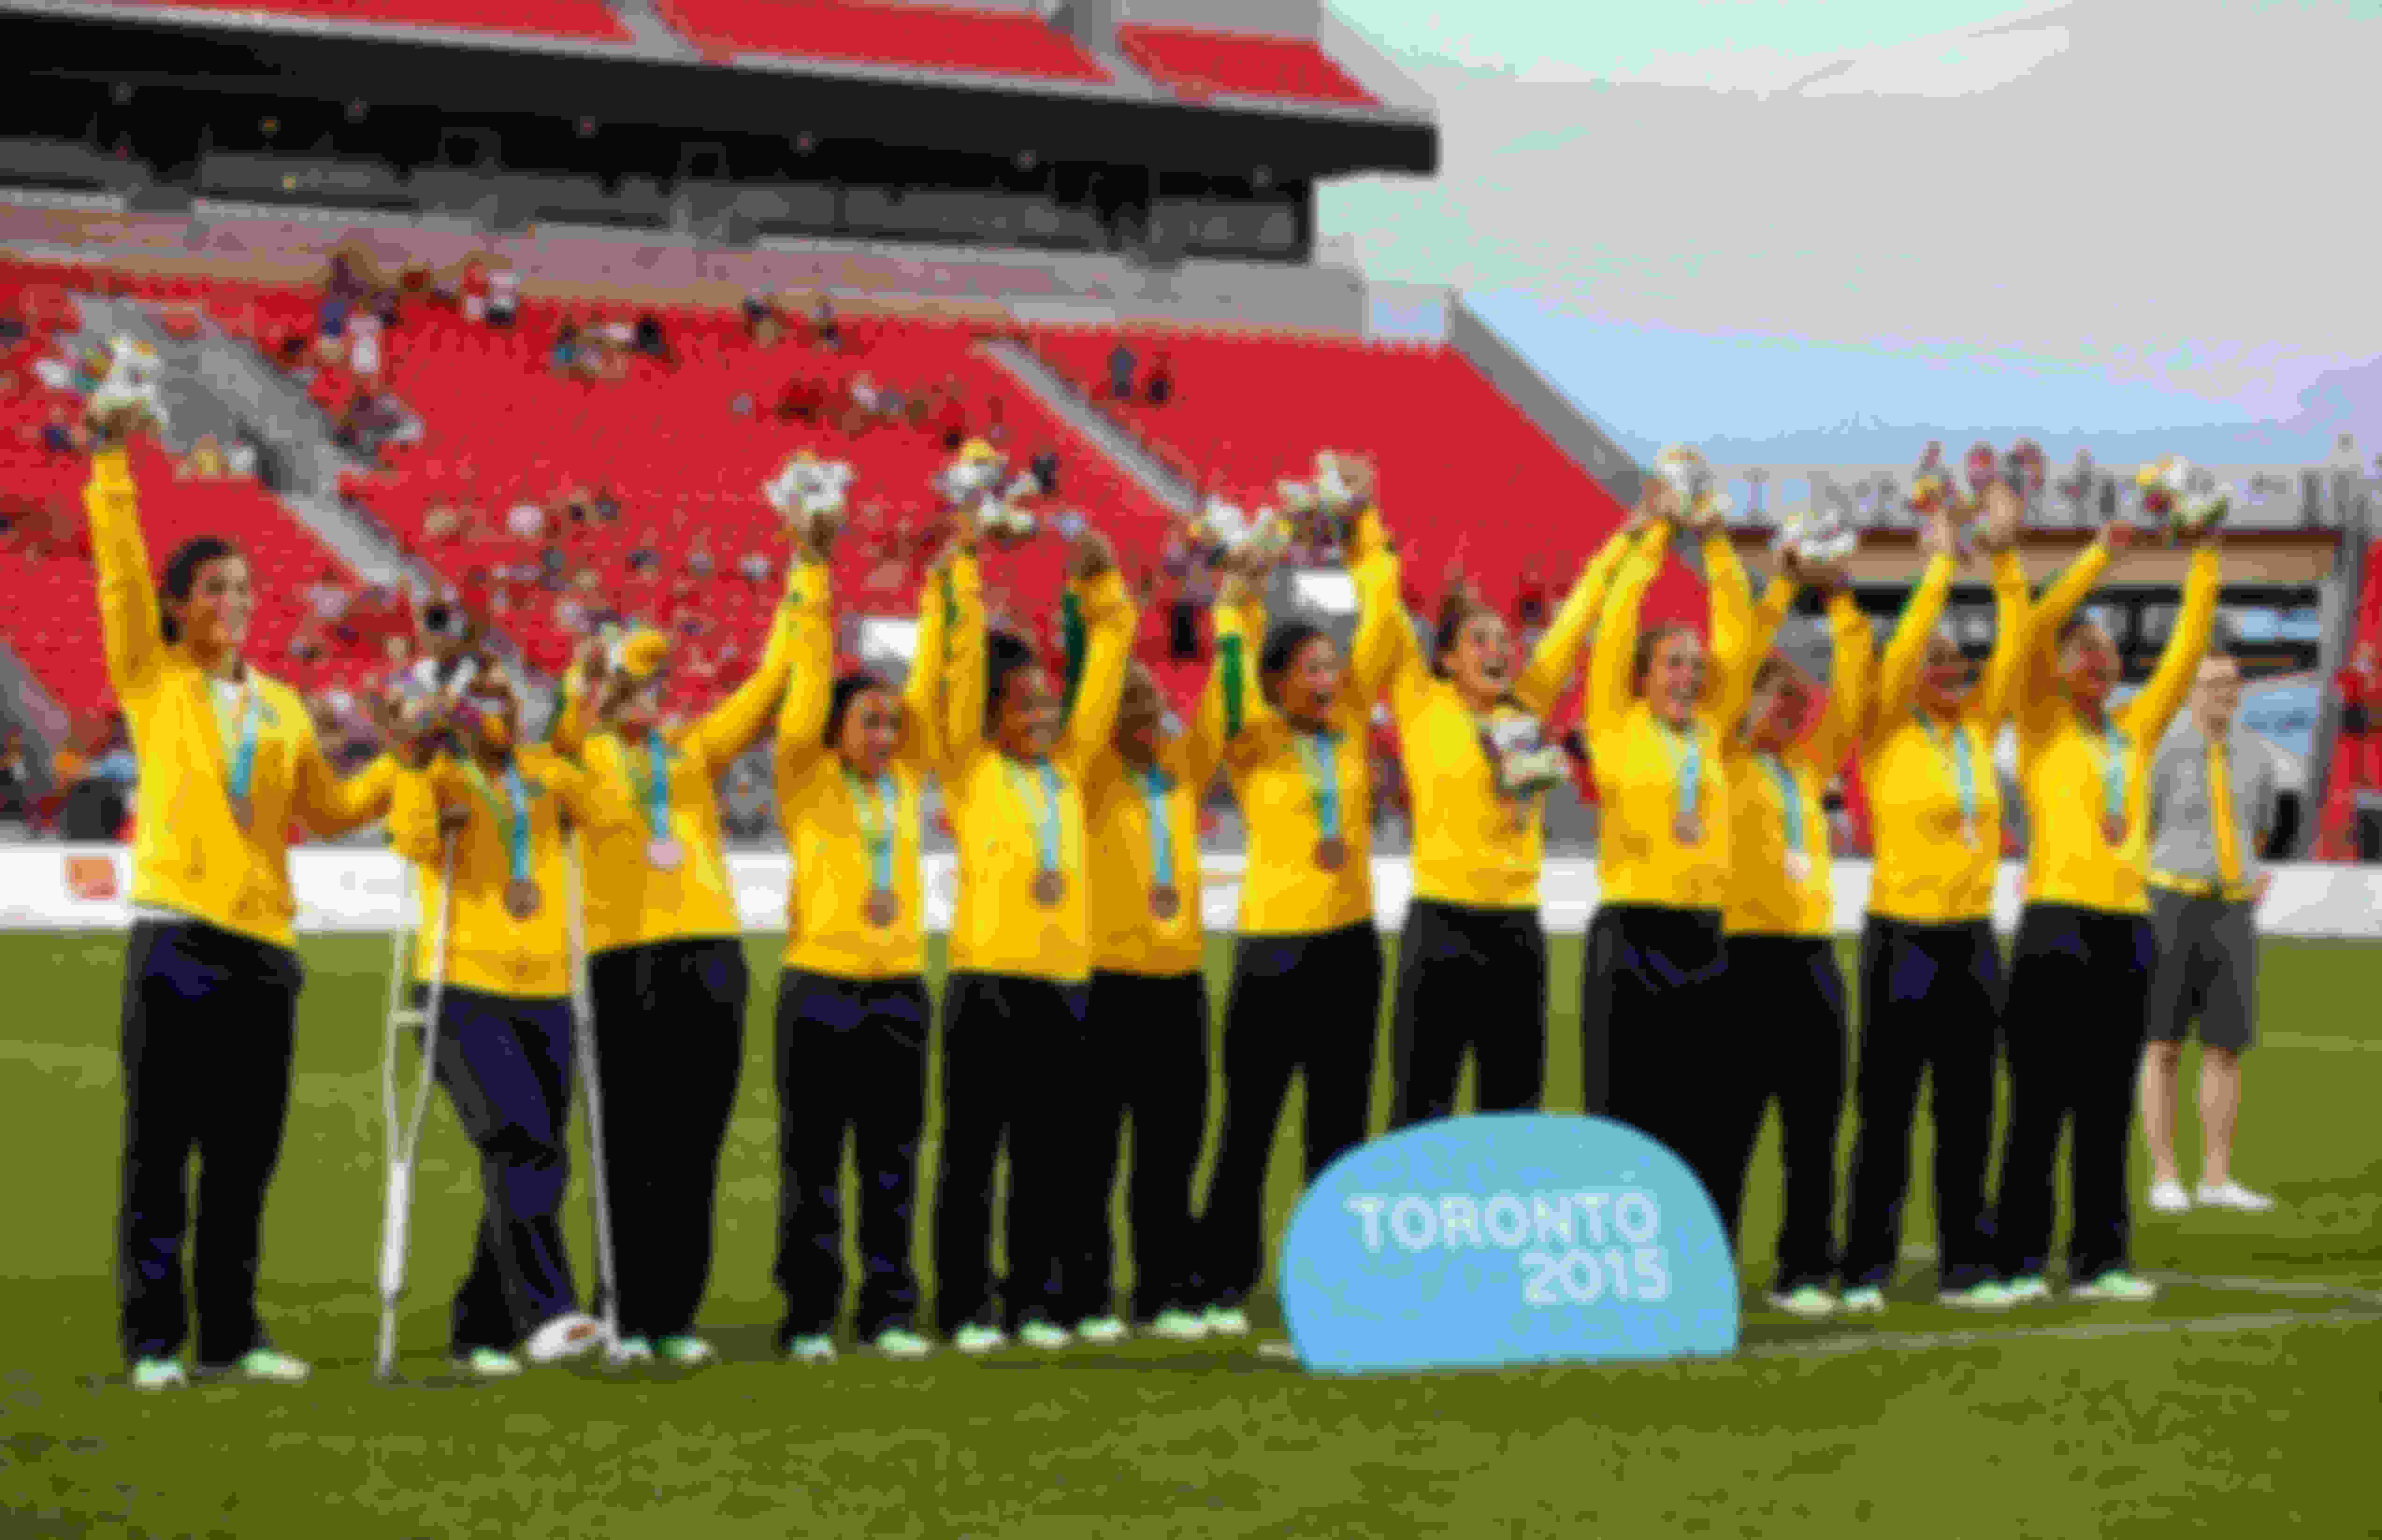 Yaras comemoram a medalha de bronze nos Jogos Pan-Americanos Toronto 2015